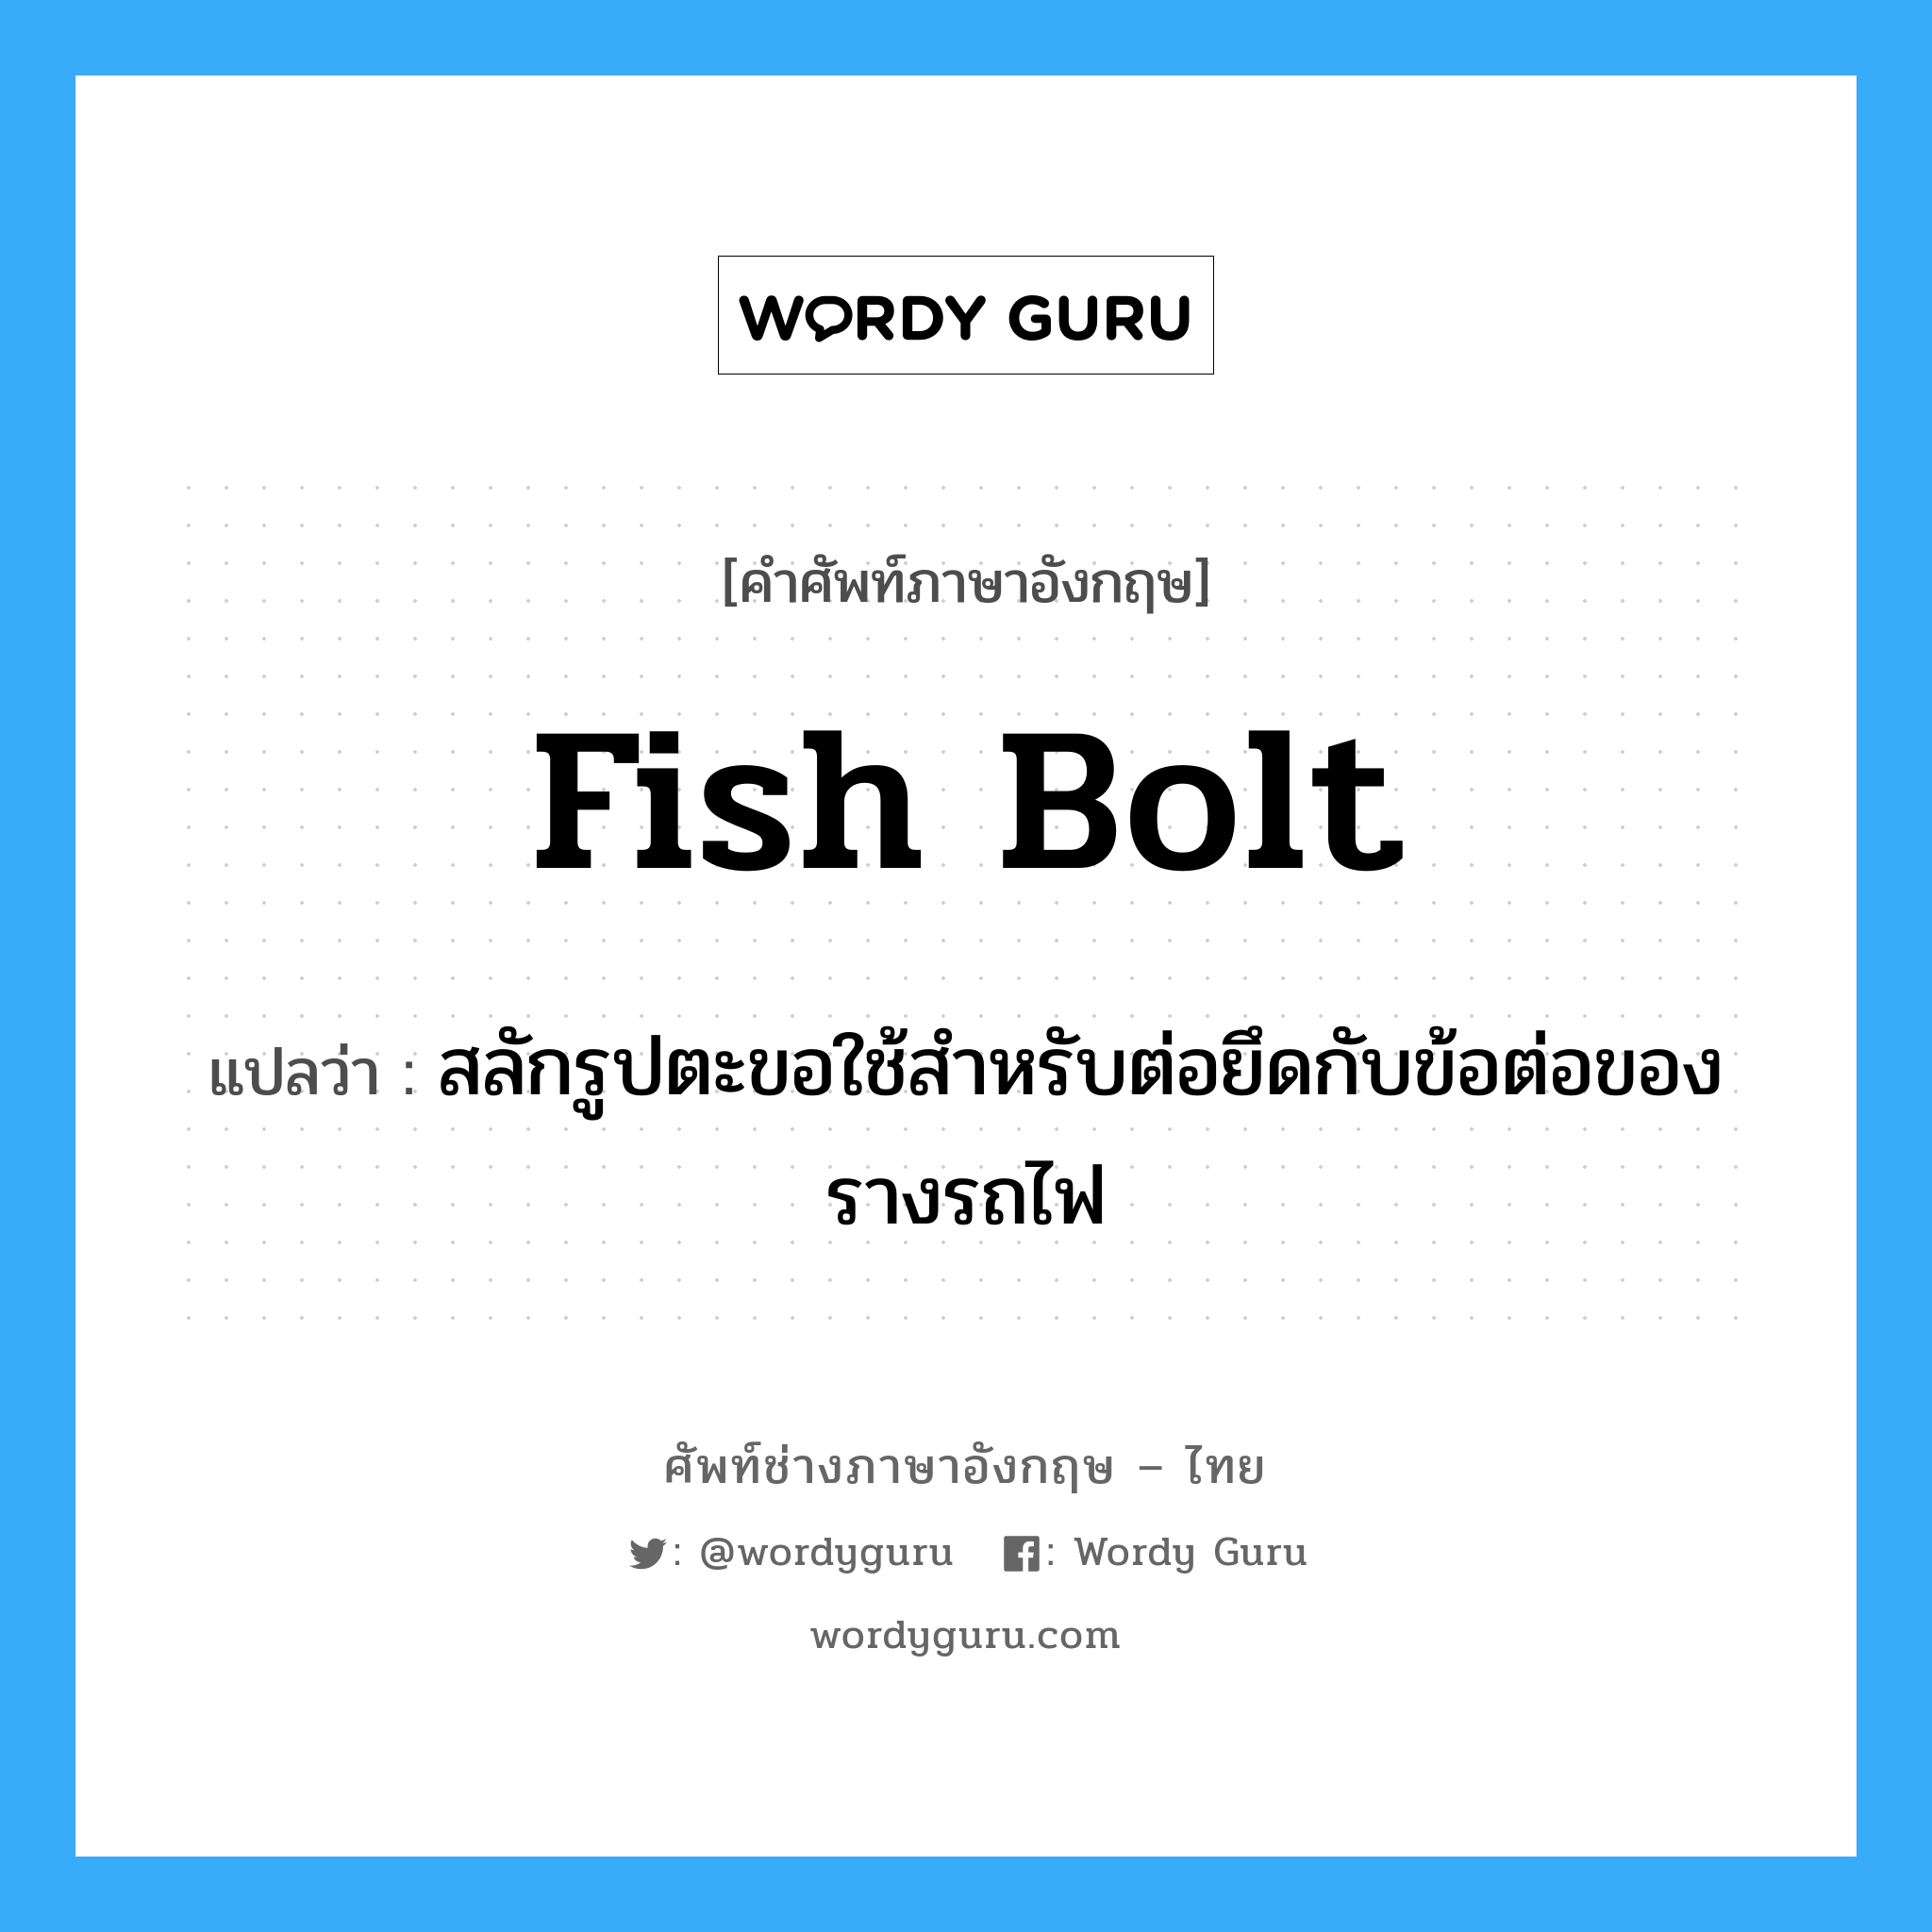 fish bolt แปลว่า?, คำศัพท์ช่างภาษาอังกฤษ - ไทย fish bolt คำศัพท์ภาษาอังกฤษ fish bolt แปลว่า สลักรูปตะขอใช้สำหรับต่อยึดกับข้อต่อของรางรถไฟ